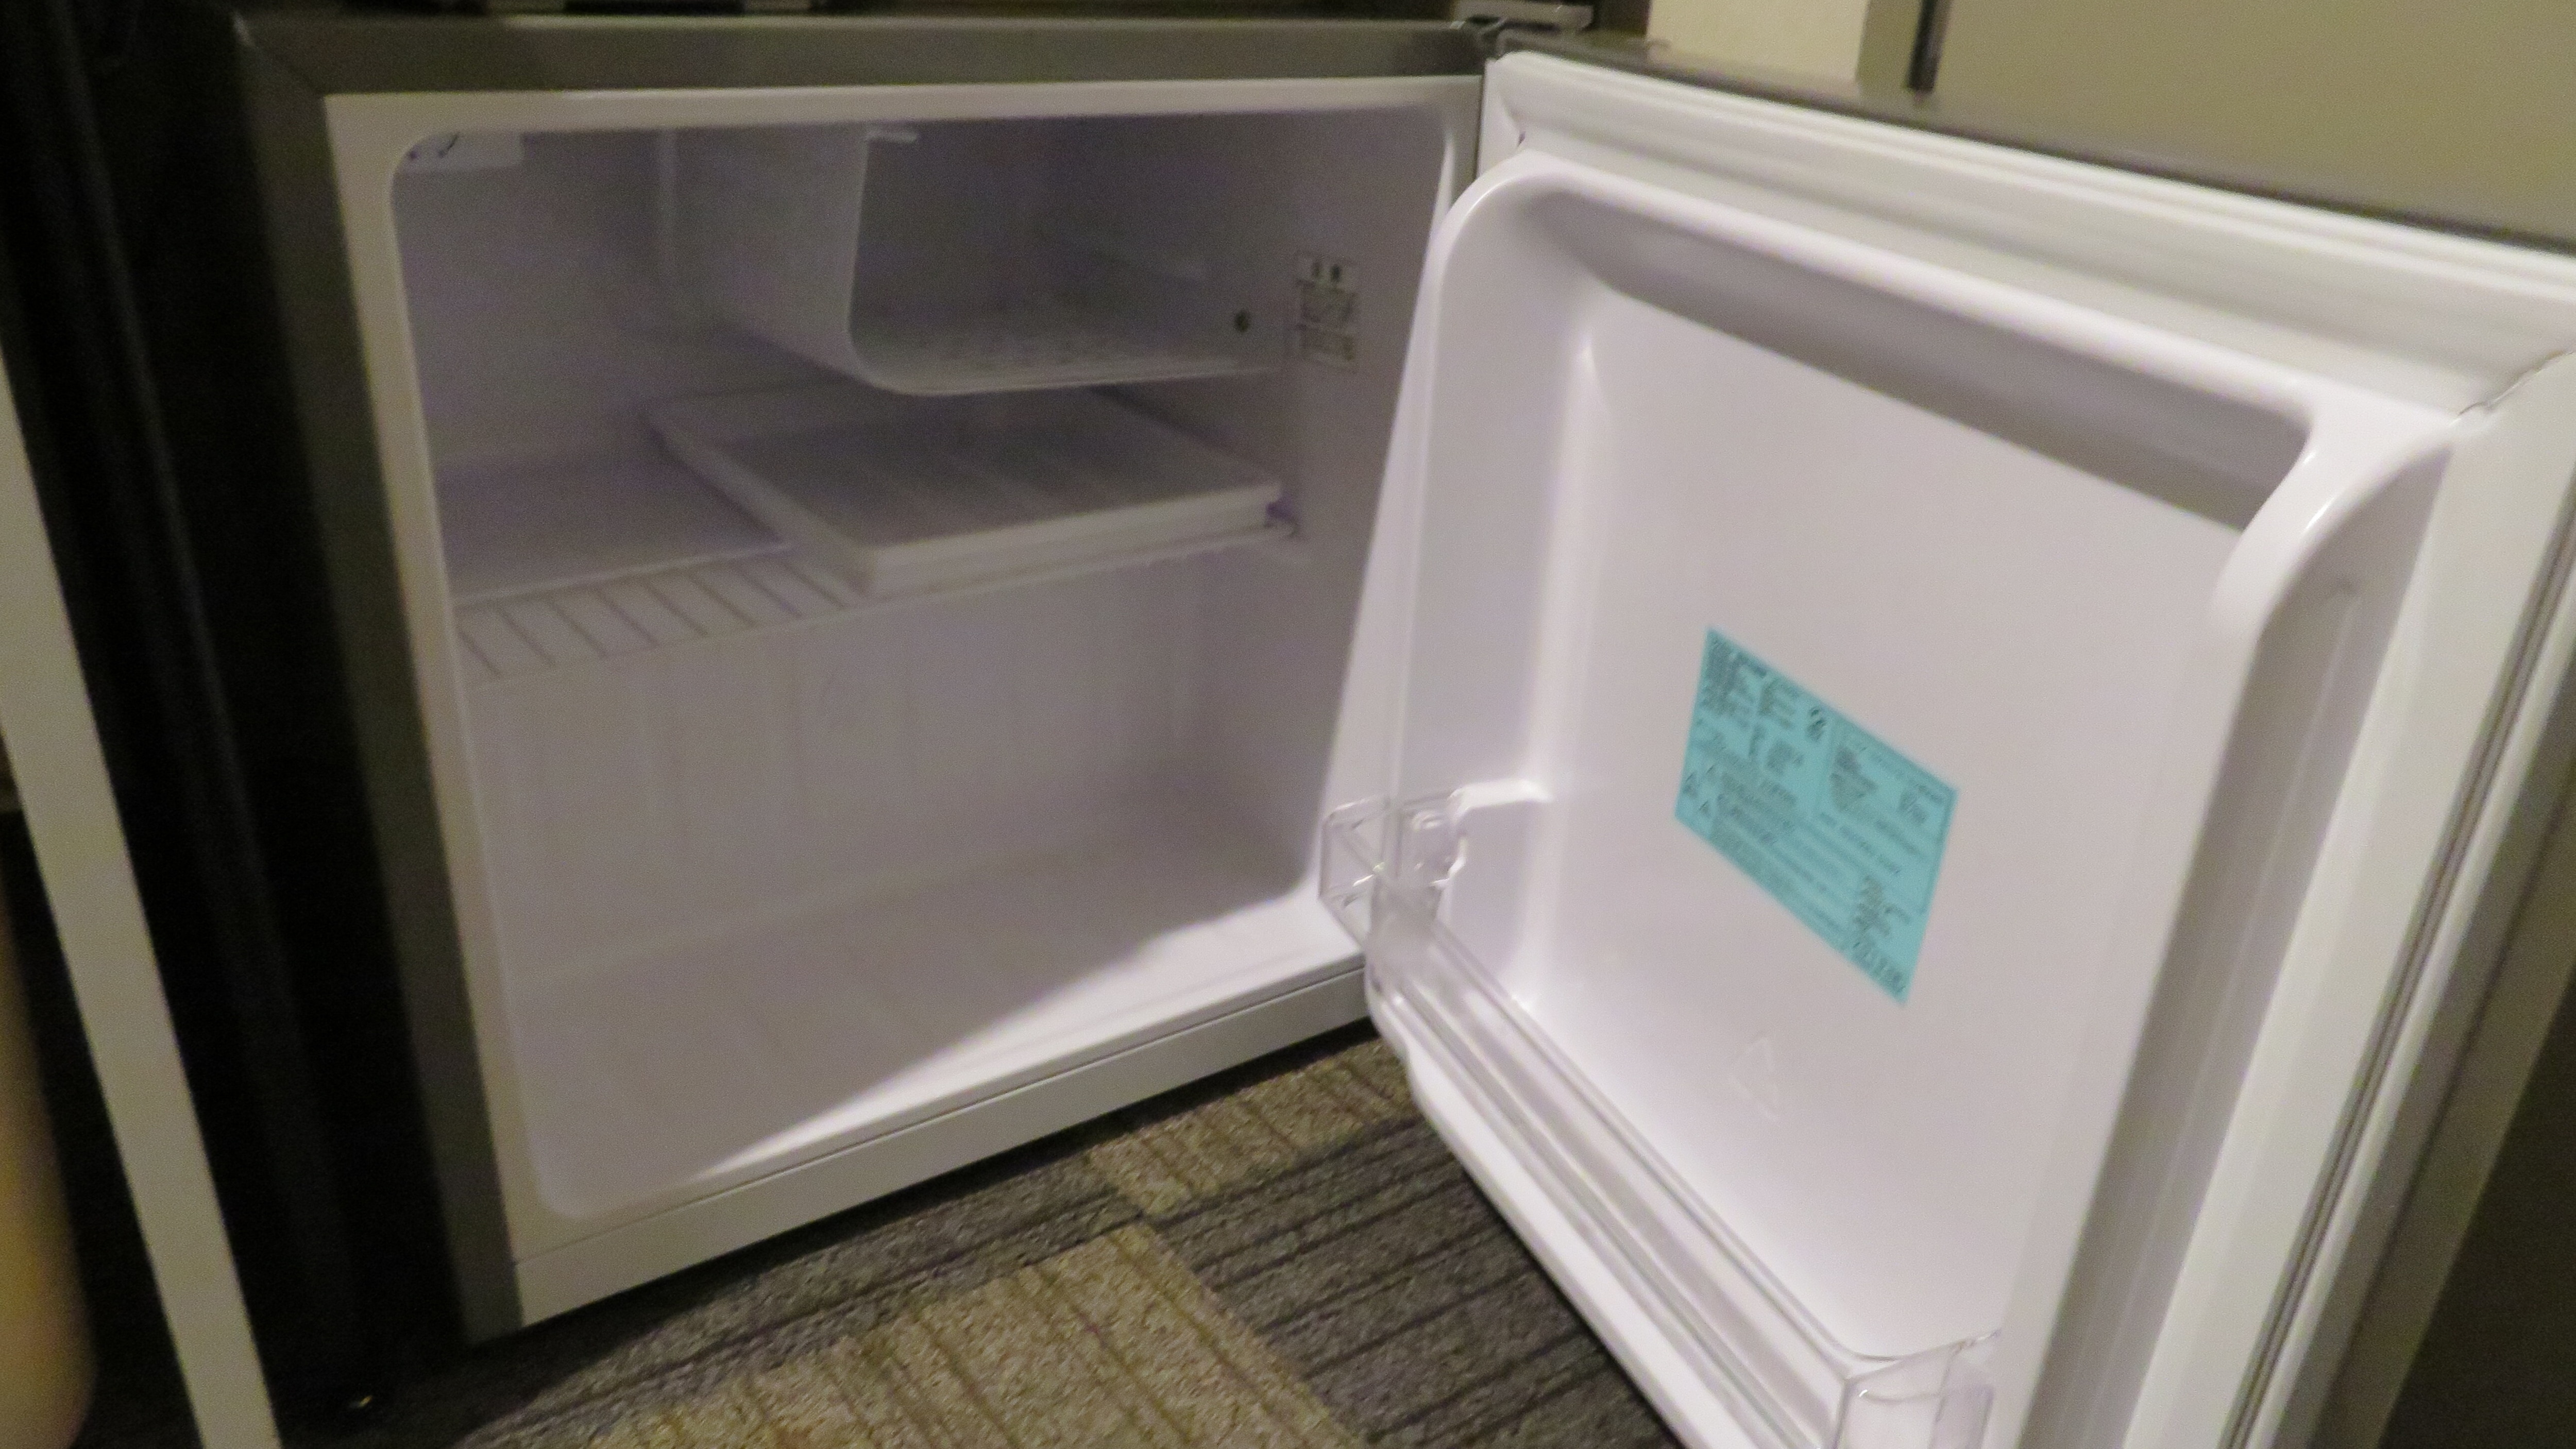 【냉장고】양실 냉동고 첨부 펠티어식 냉장고를 처분해, 모두 컴프레서 직냉식으로 바꿨습니다.